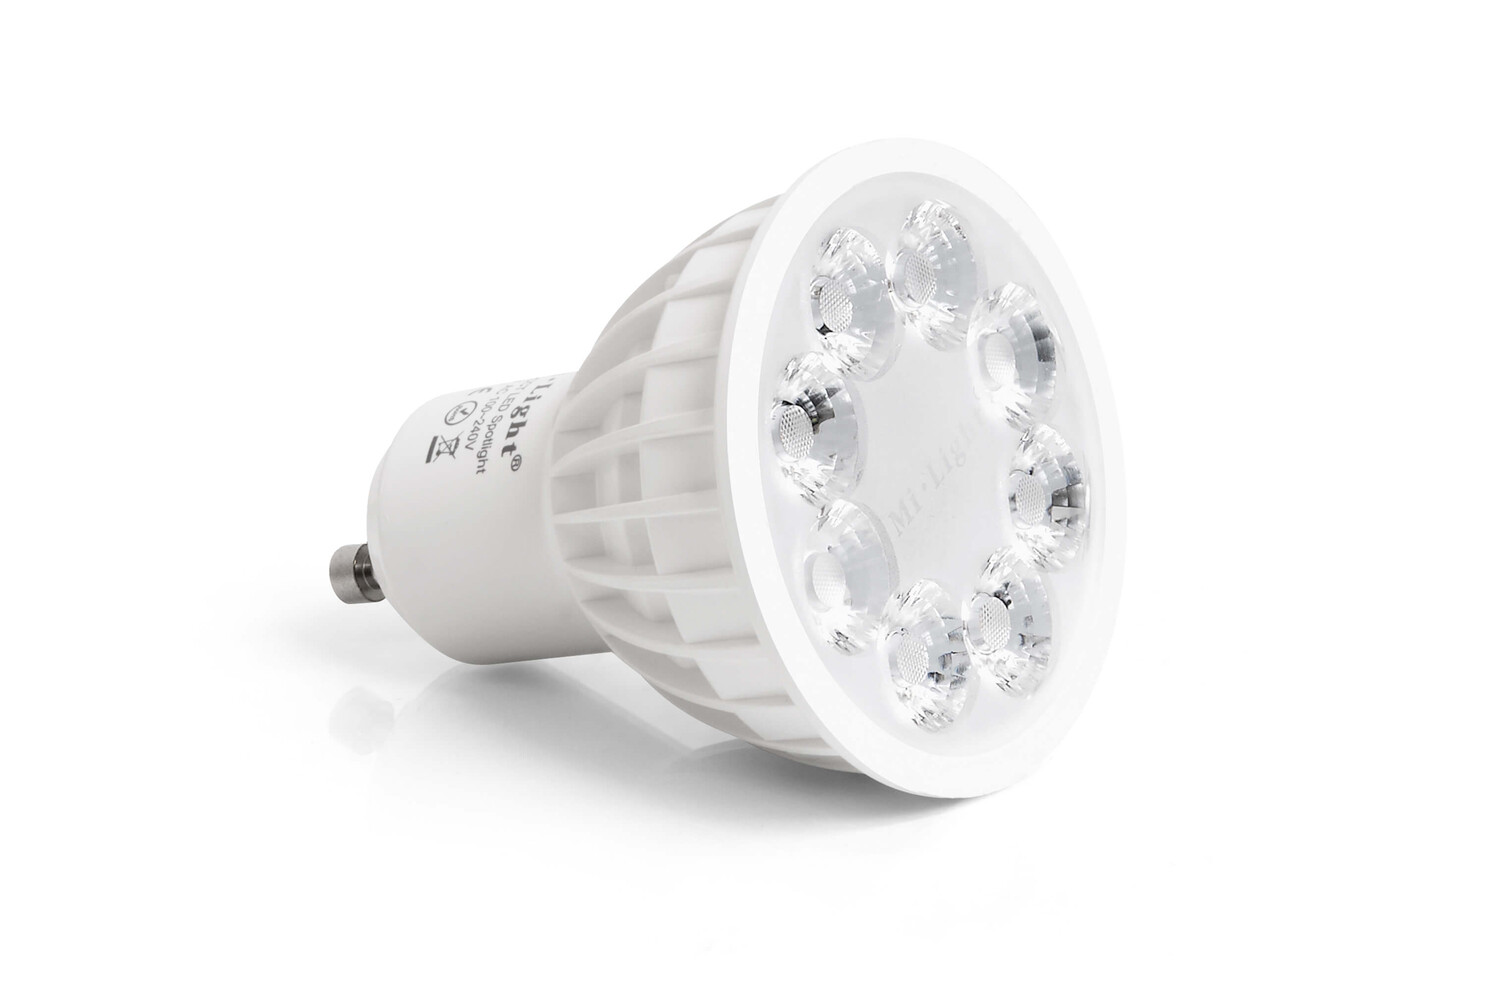 Hochwertige stiftsockellampen von LED Universum für helles und energieeffizientes Licht